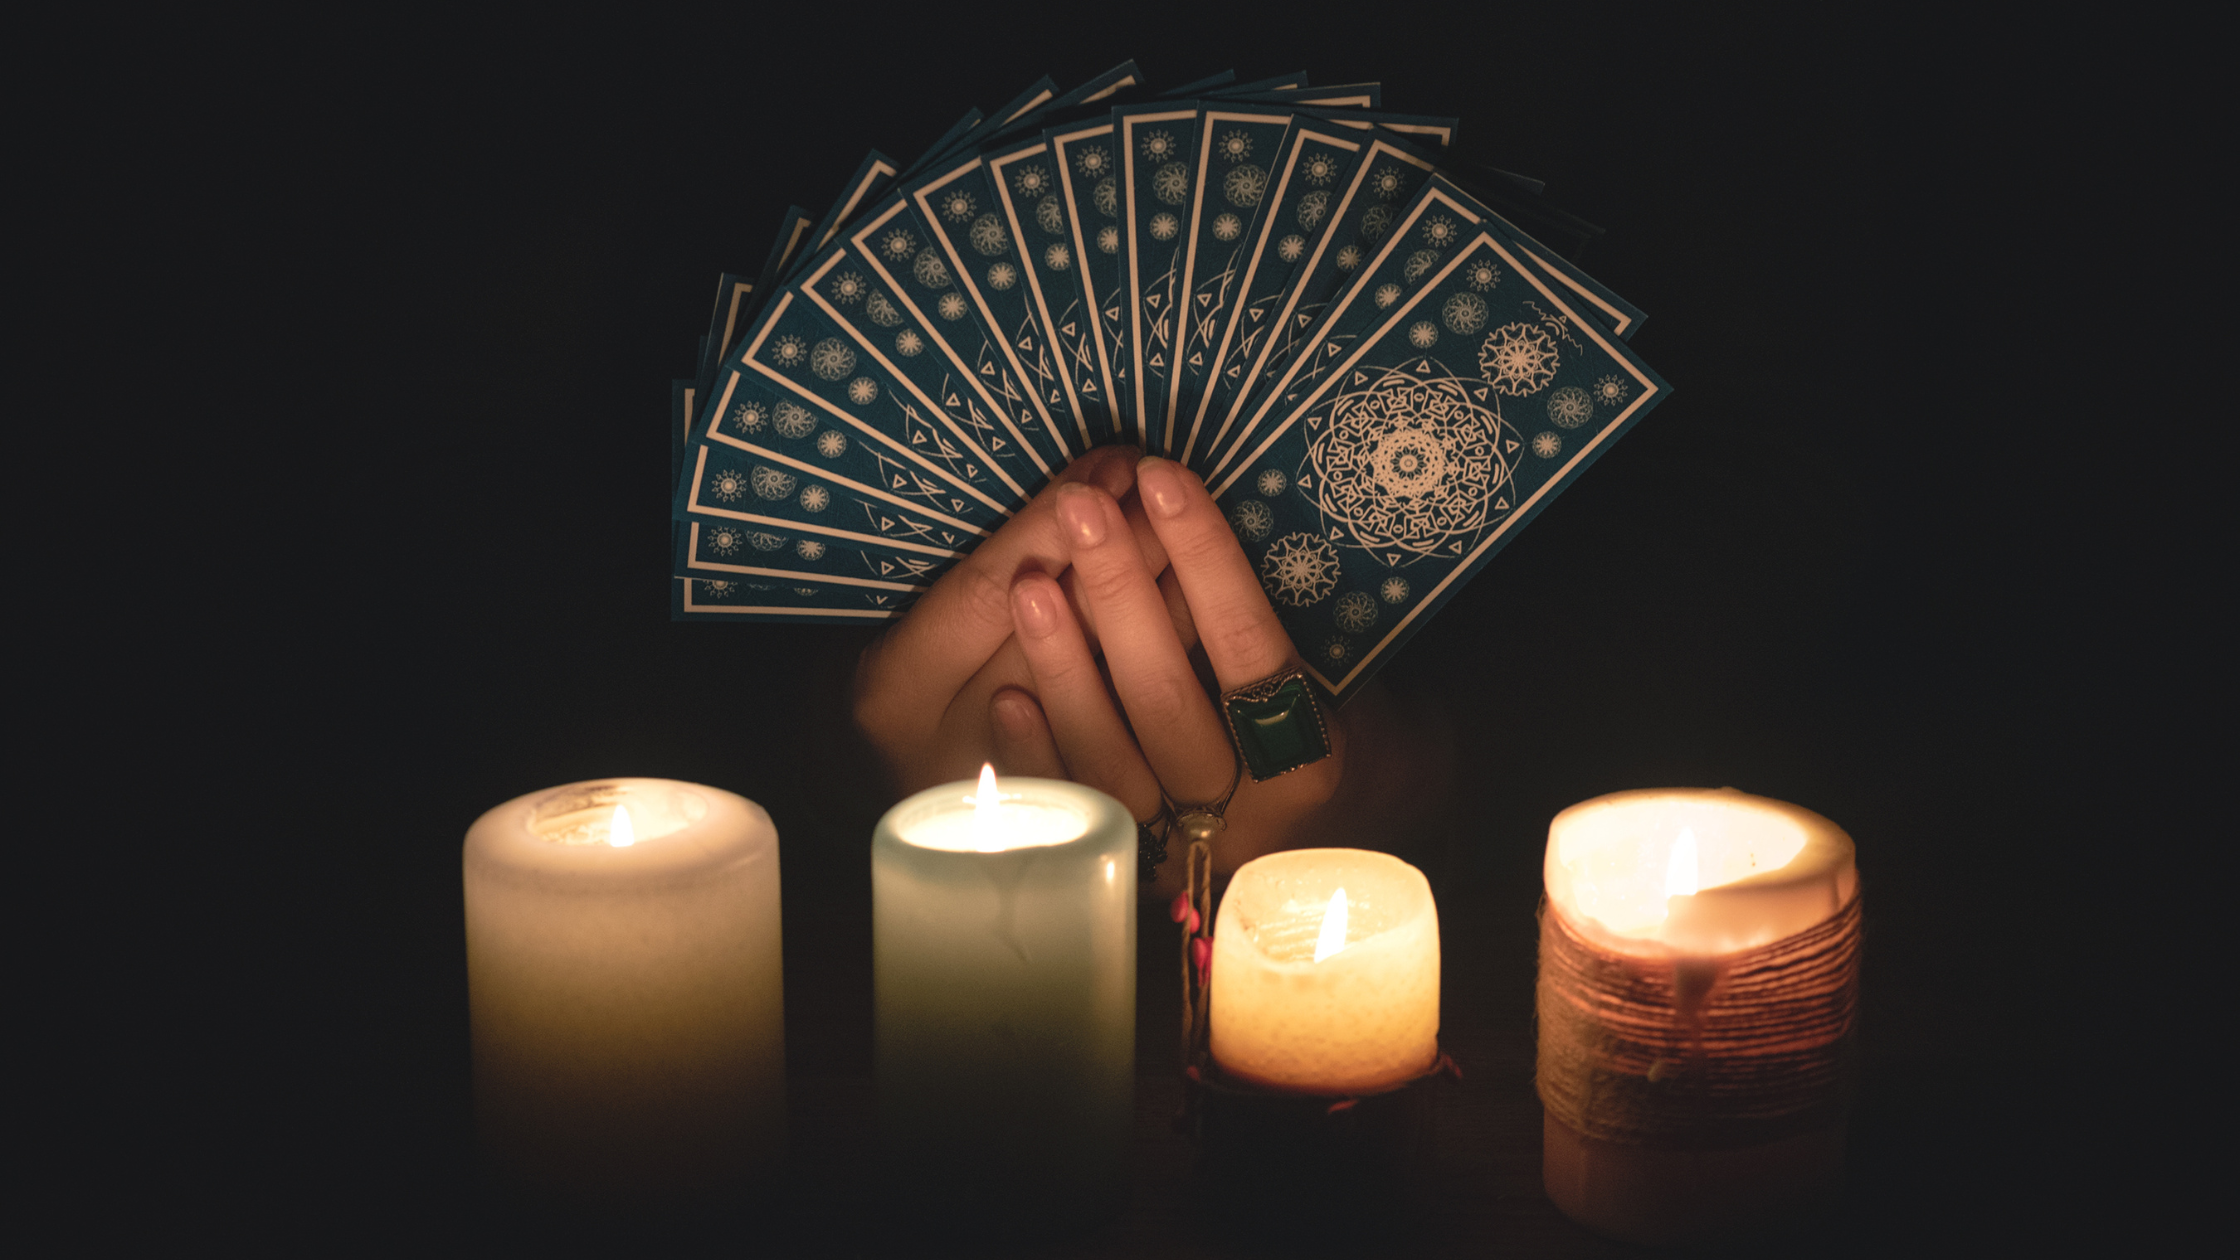 tarot cards reading